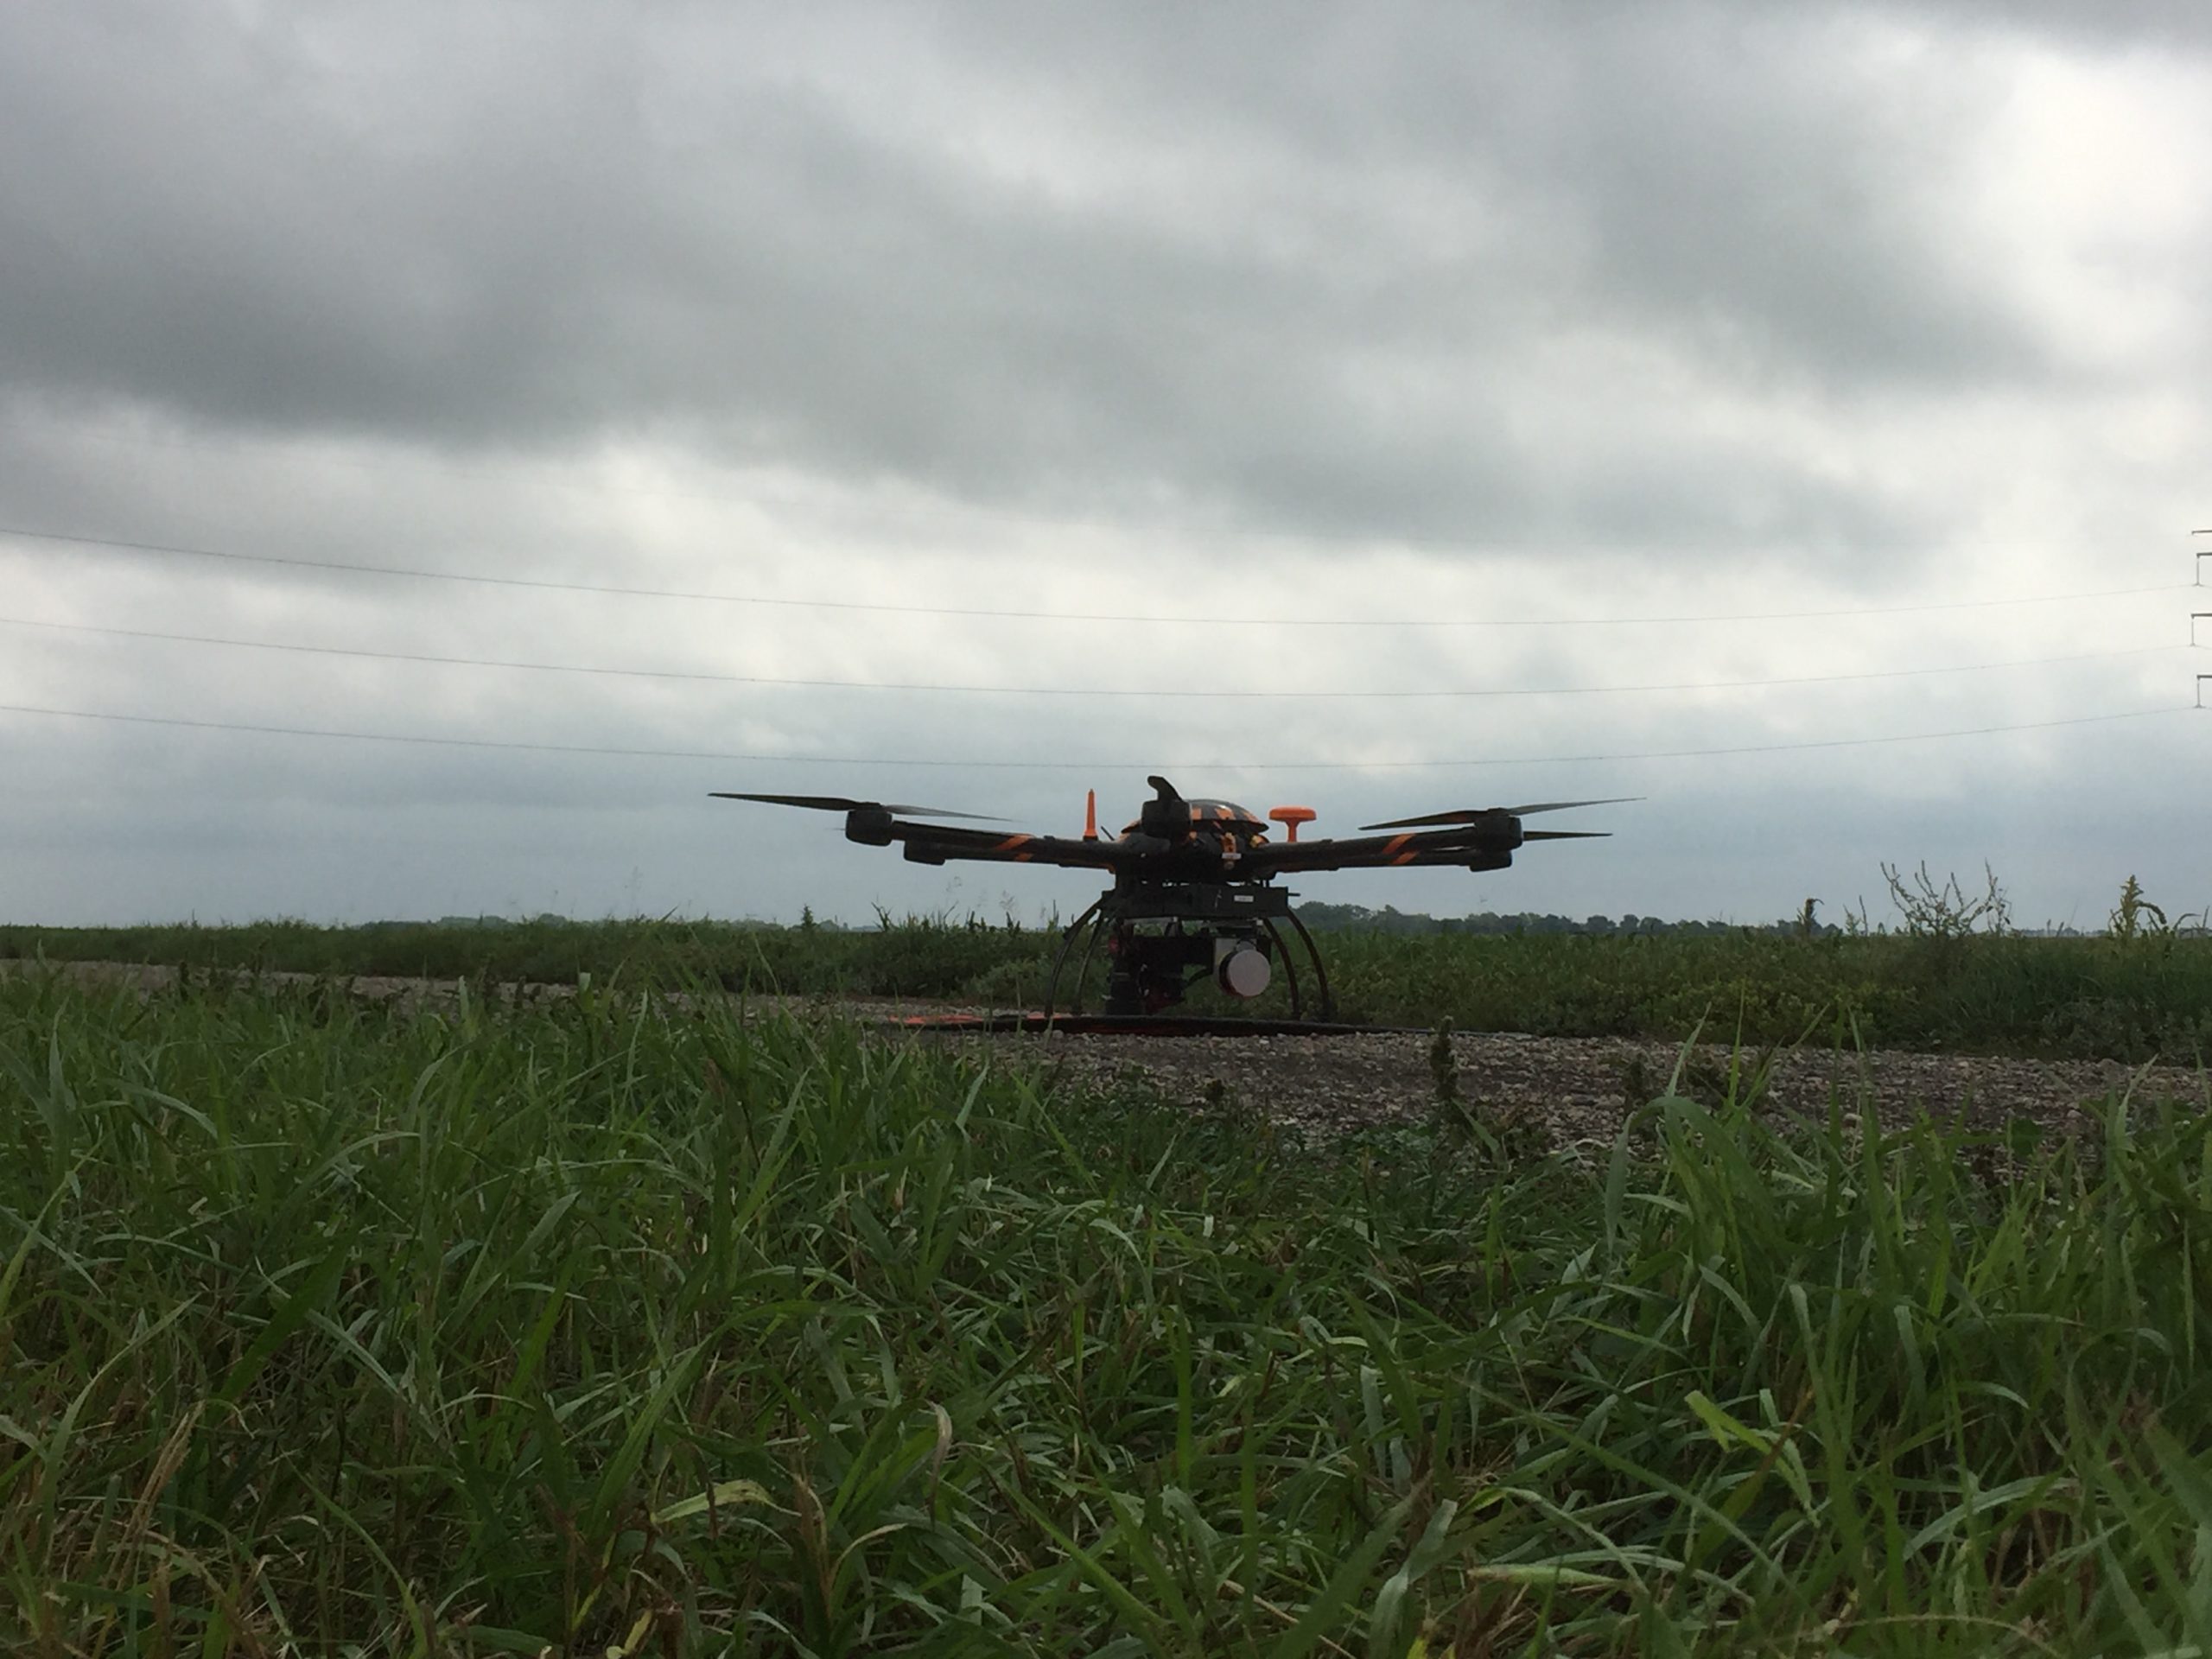 drone plane landed in a field